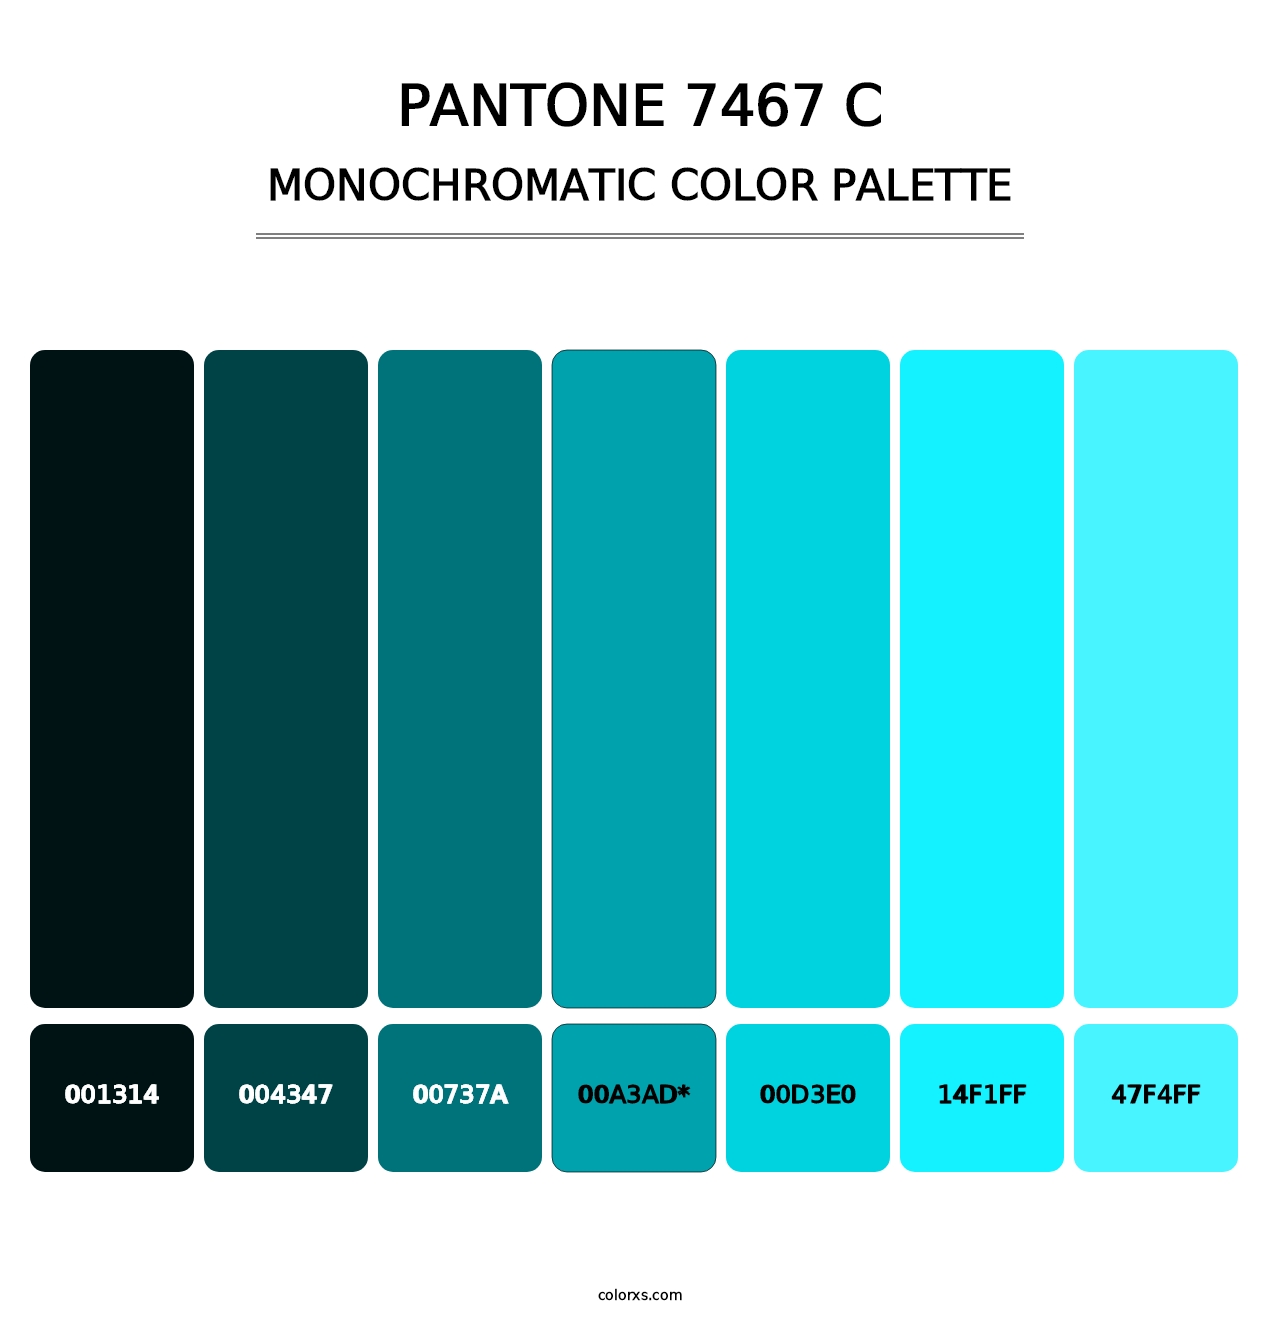 PANTONE 7467 C - Monochromatic Color Palette